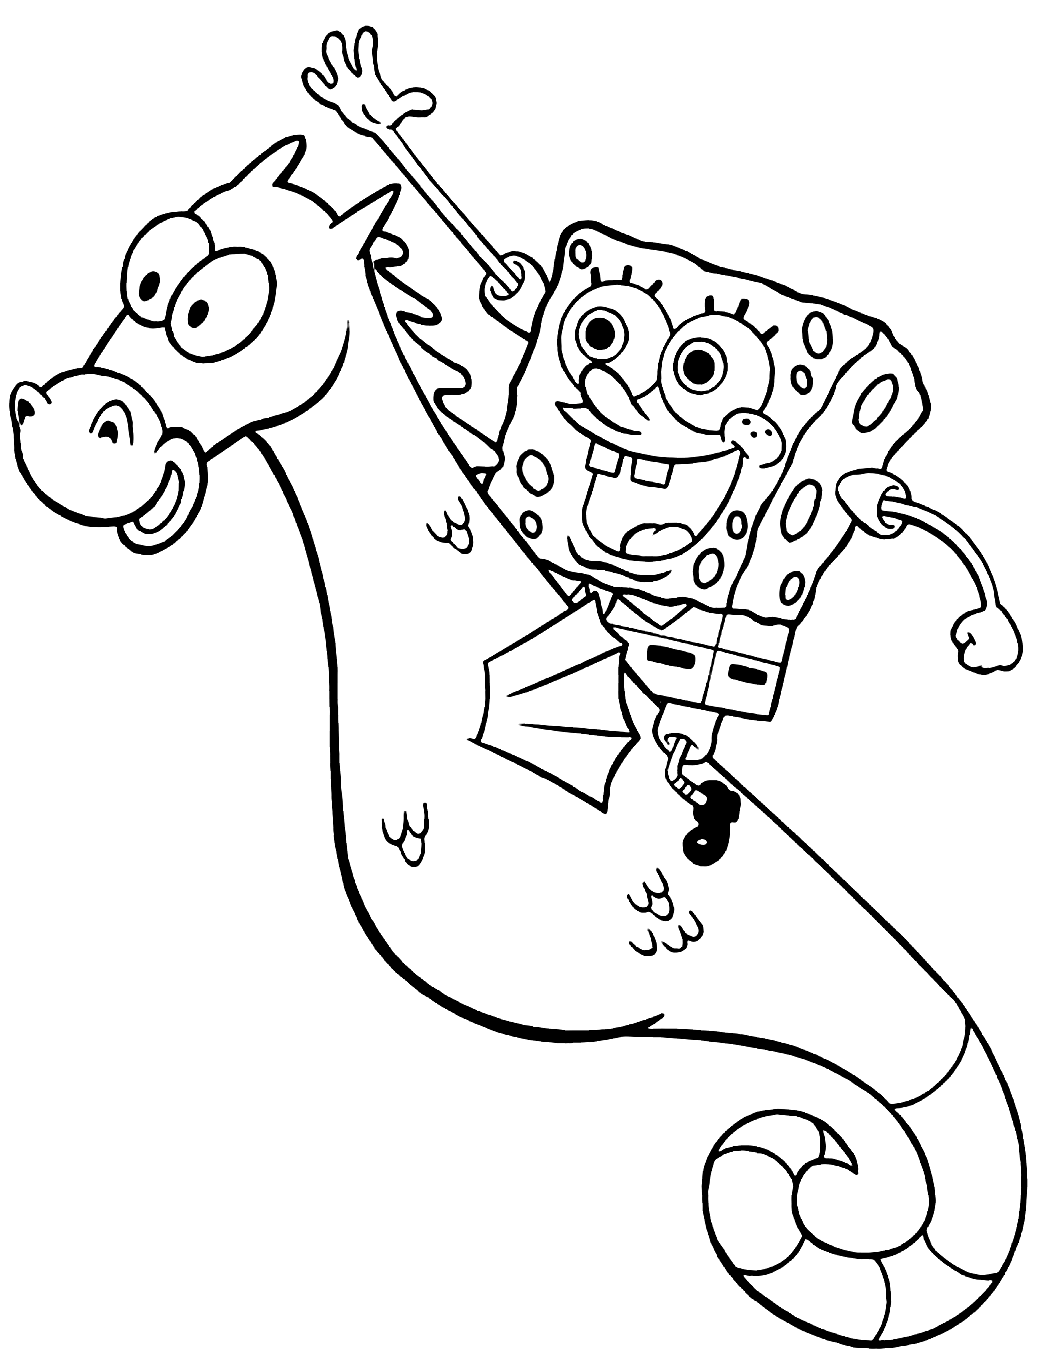 Spongebob Riding Seahorse Coloring Page